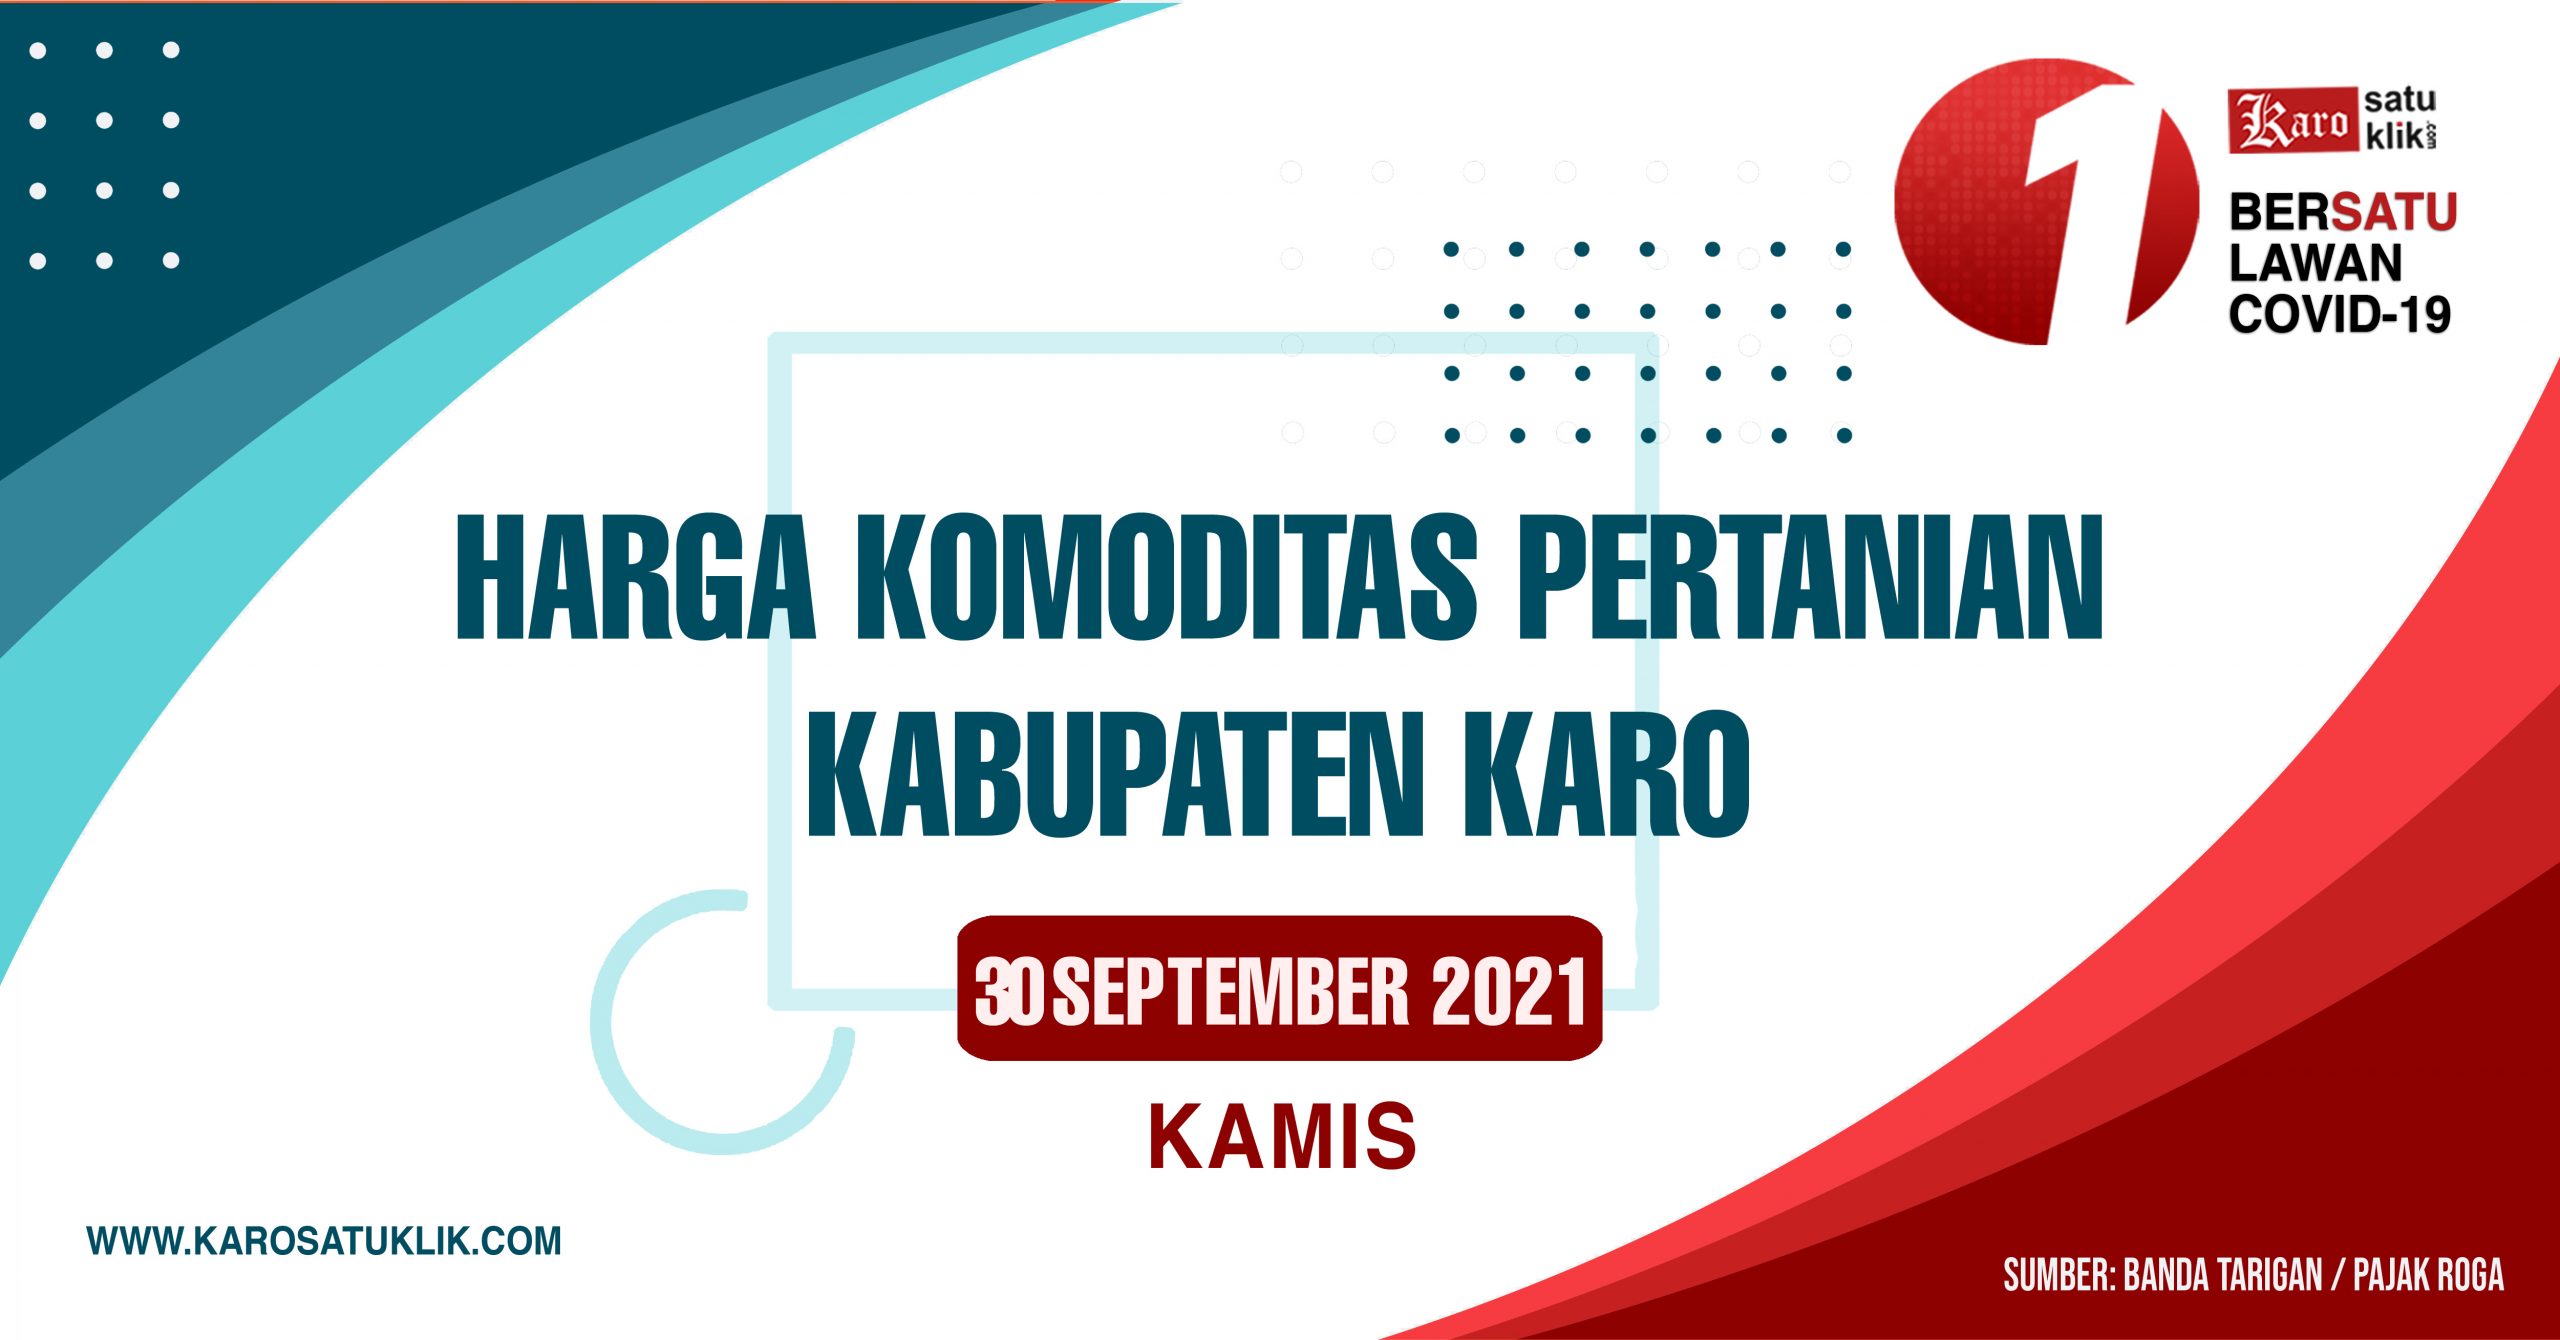 Daftar Harga Komoditas Pertanian Kabupaten Karo, 30 September 2021